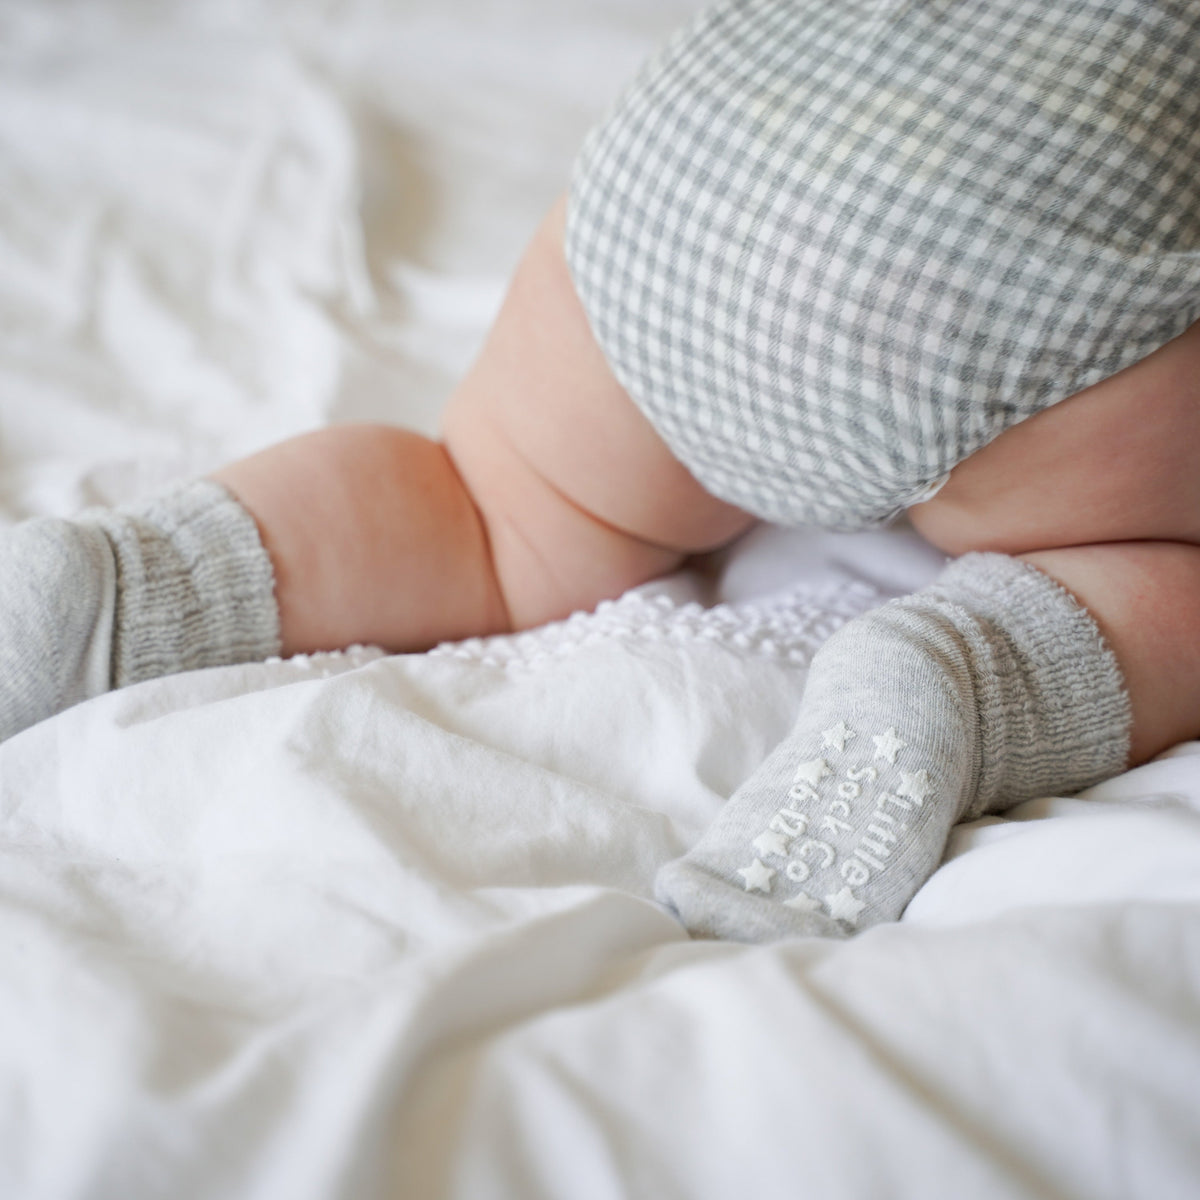 Newborn Starter Set - Stay-on baby socks + Leggings - Neutral